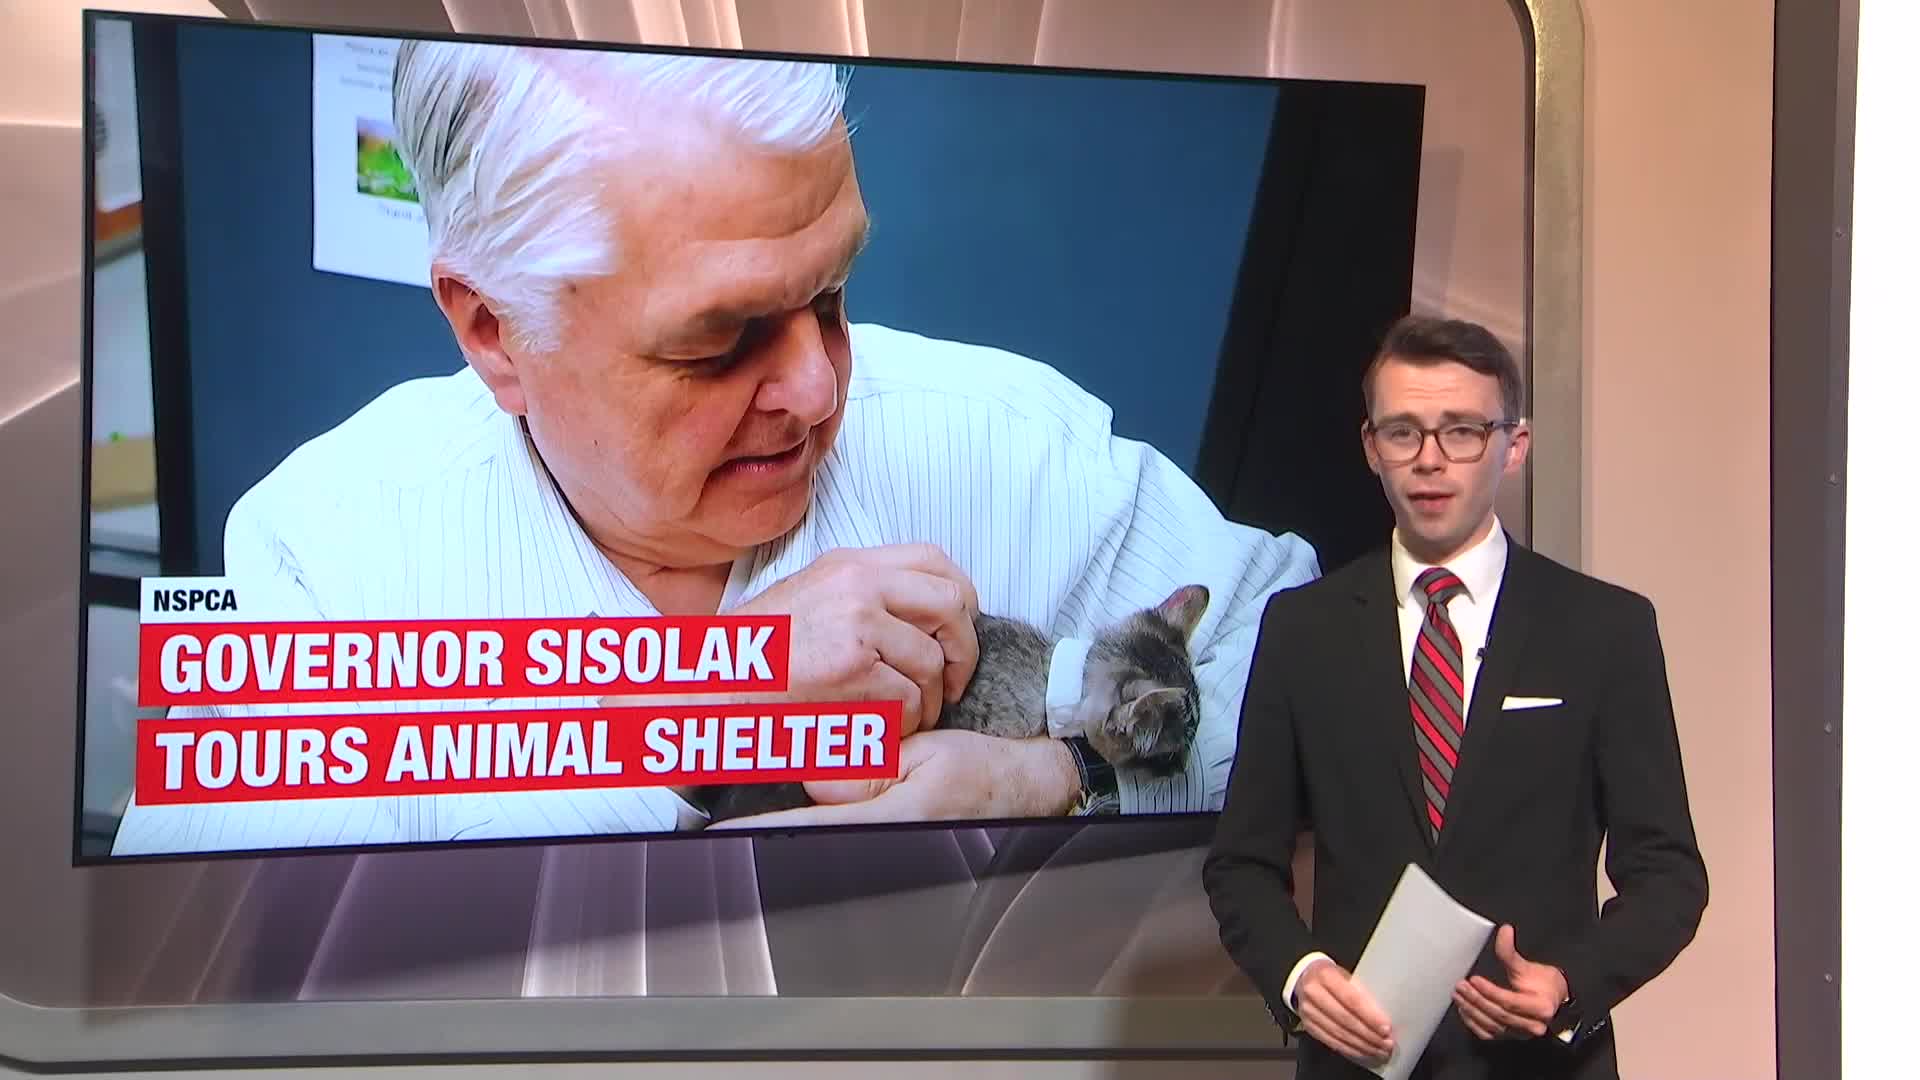 Sisolak visits animal shelter